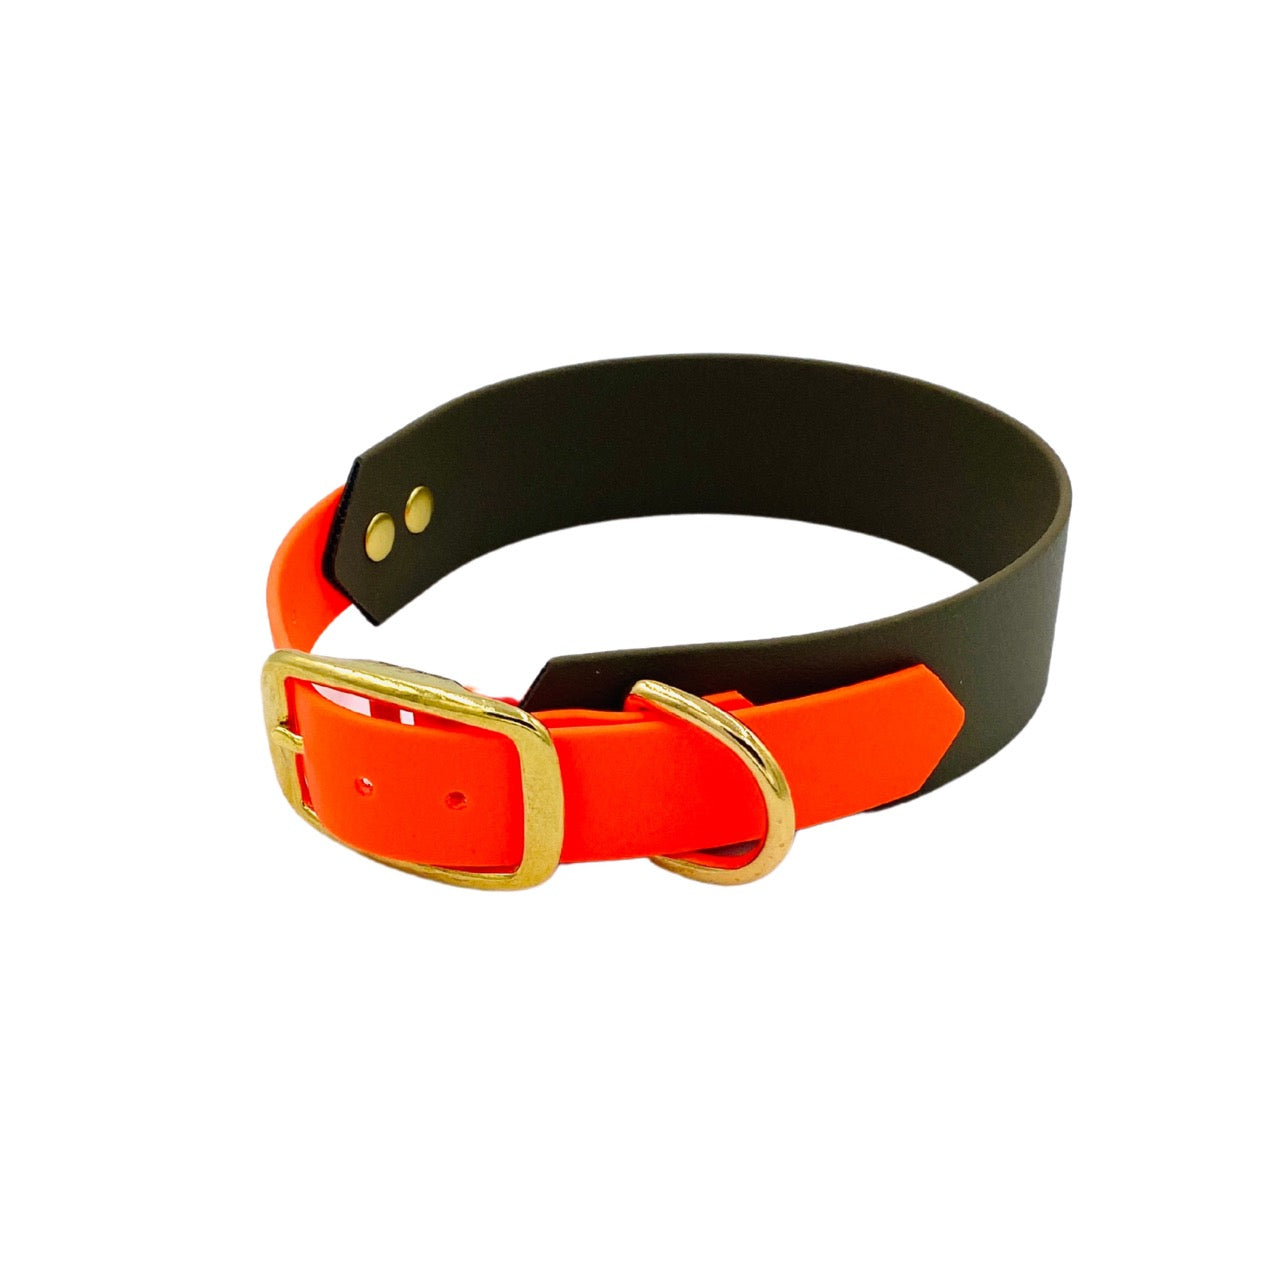 Hondenhalsband speciaal voor windhonden gemaakt van Biothane in olijfgroen en neon oranje